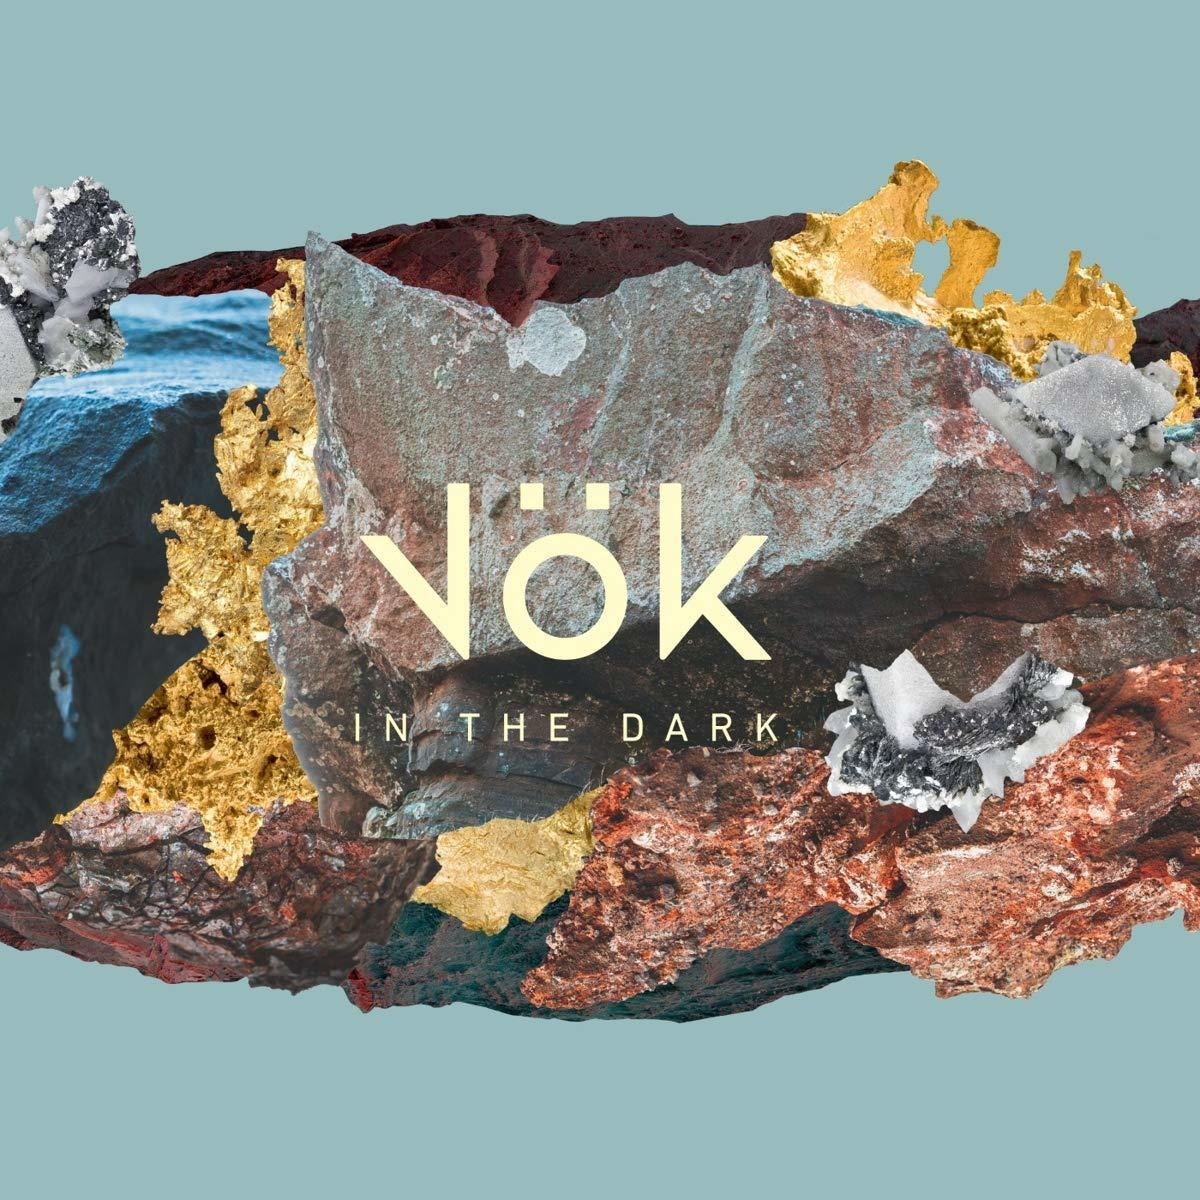 Dark In Vok (CD) - the -